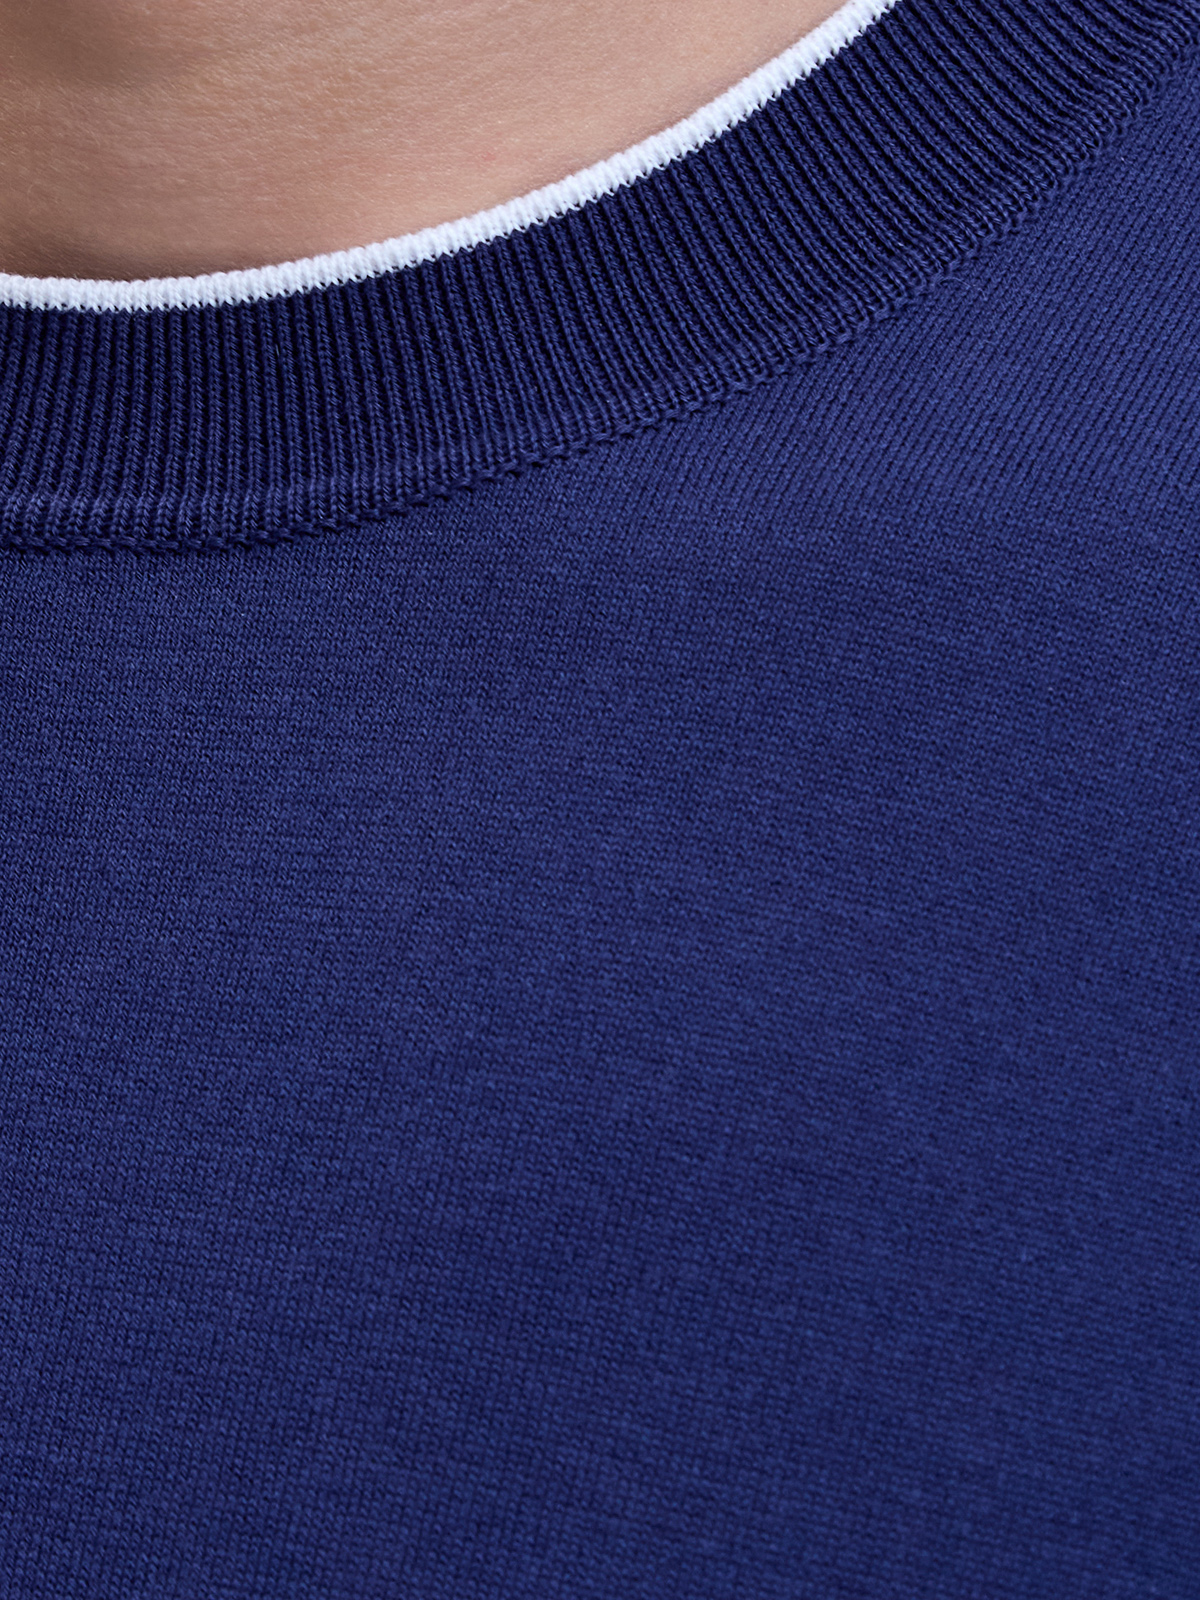 Хлопковый джемпер с короткими рукавами и контрастной окантовкой BERTOLO, цвет синий, размер 48;50;52;54;56;58;60;62 - фото 5